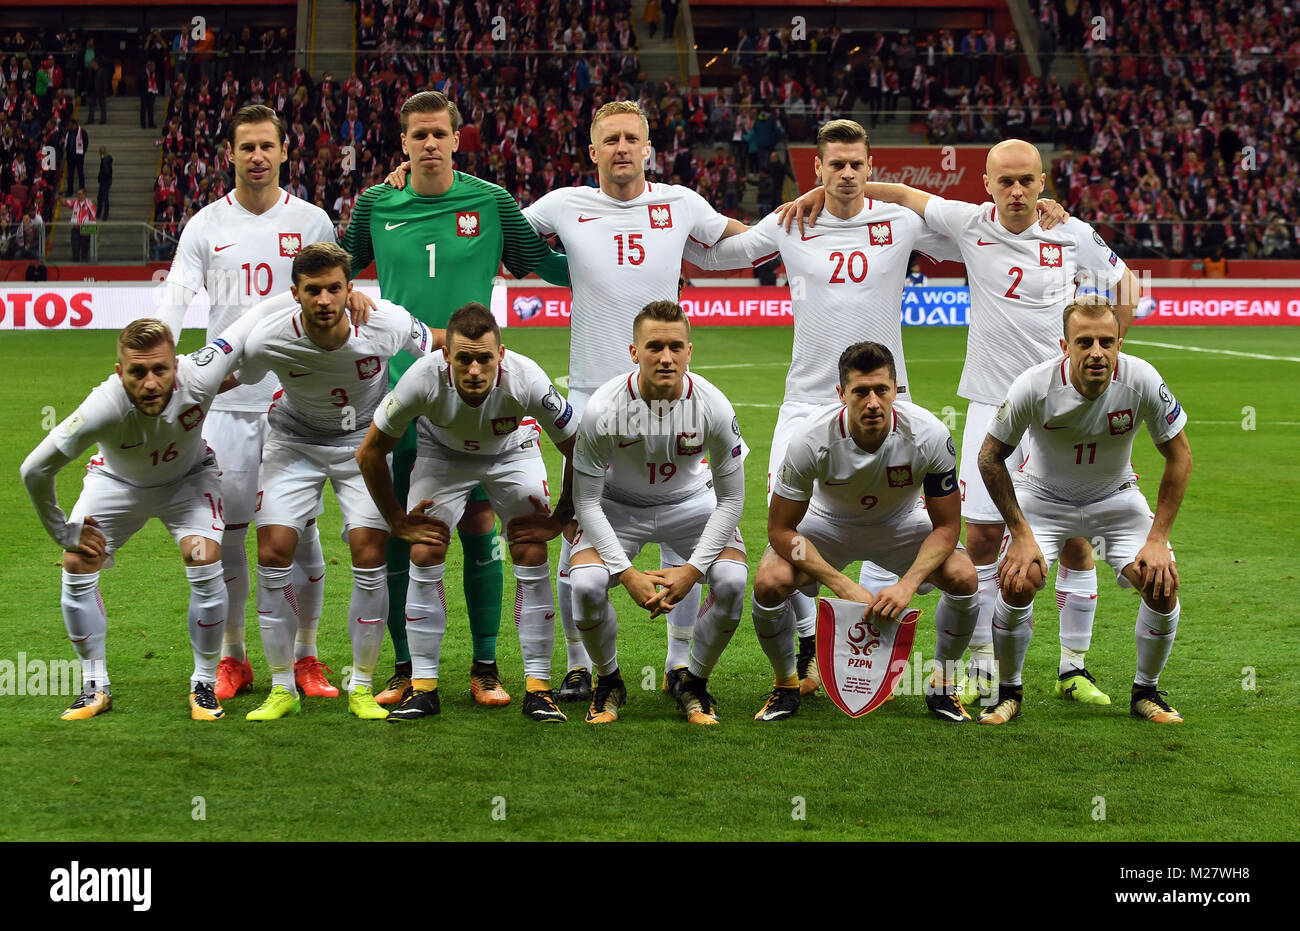 8 Oktober, 2017 - Warschau, Polen: Fußball WM 2018 Qualifikation Rusia Polen - Montenegro o/p Polen Team photo Line up Stockfoto